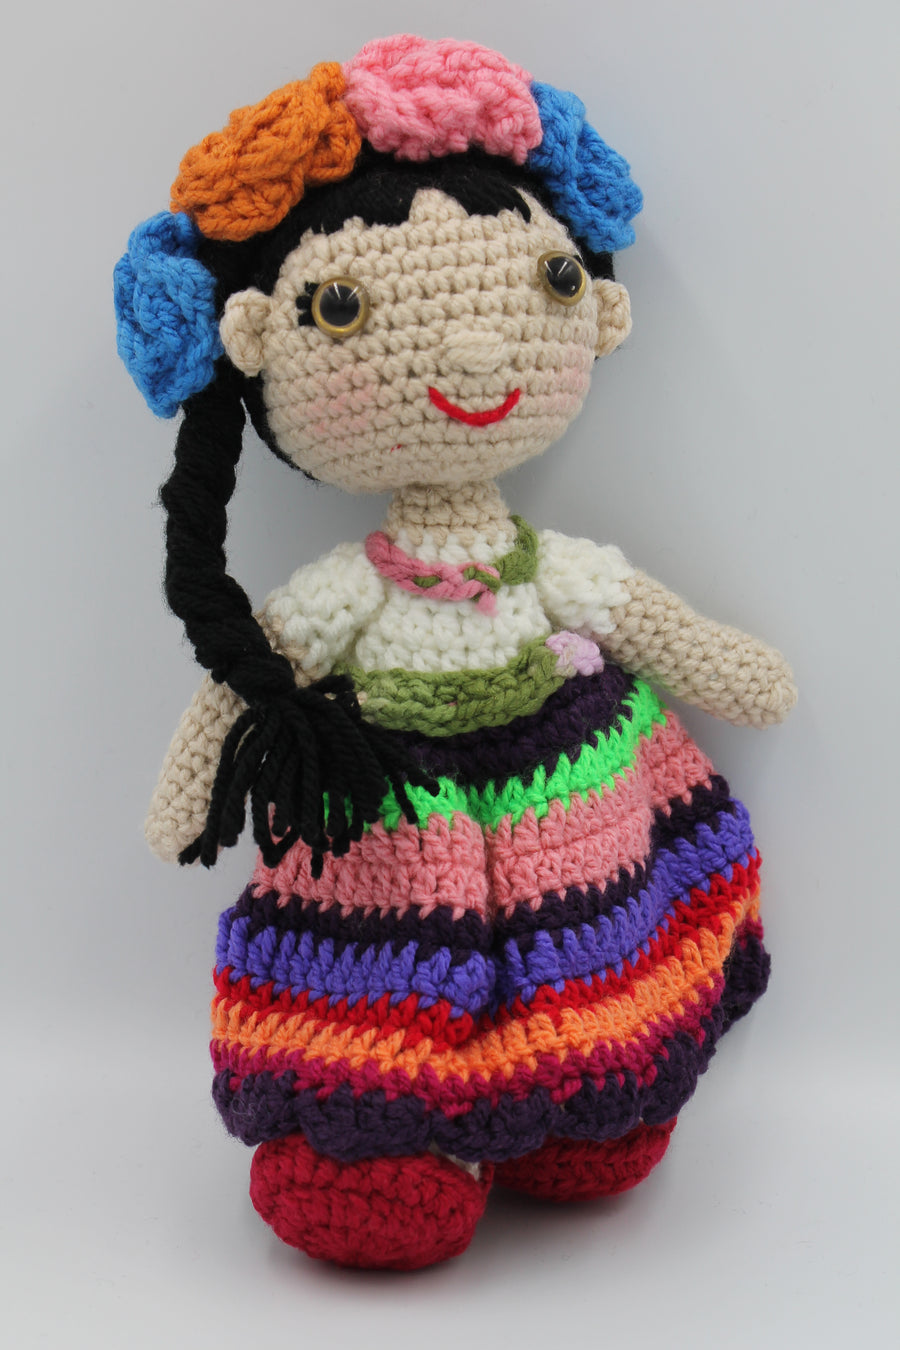 Crochet Doll - Multi Color Skirt